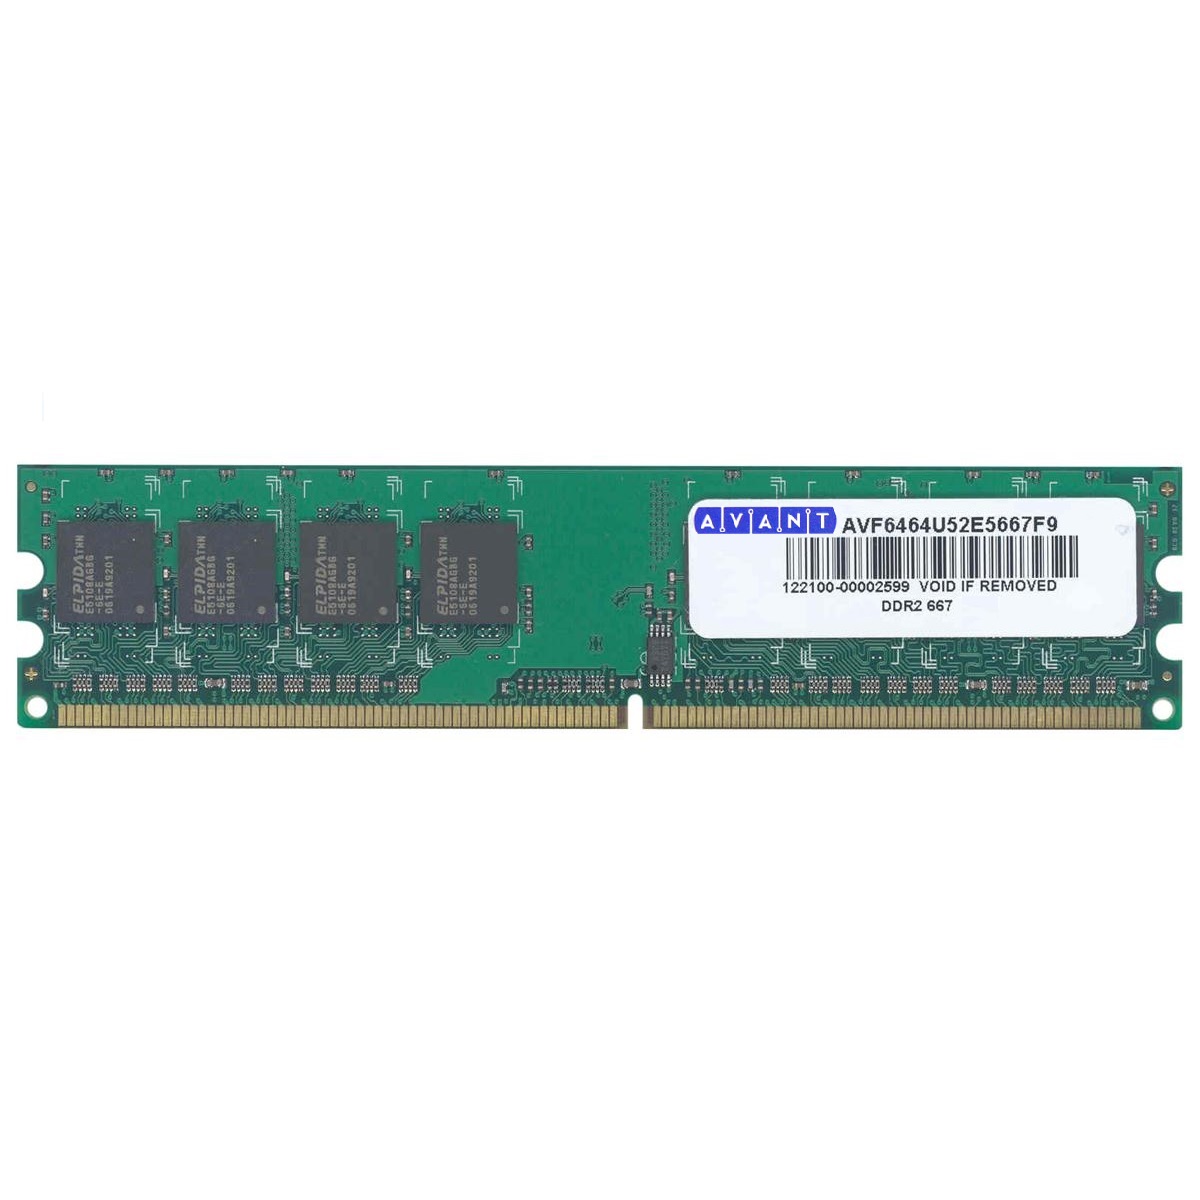 رم دسکتاپ DDR2 تک کاناله 667 مگاهرتز CL5 آوانت مدل AVF6428U52E5667F9 ظرفیت 1 گیگابایت